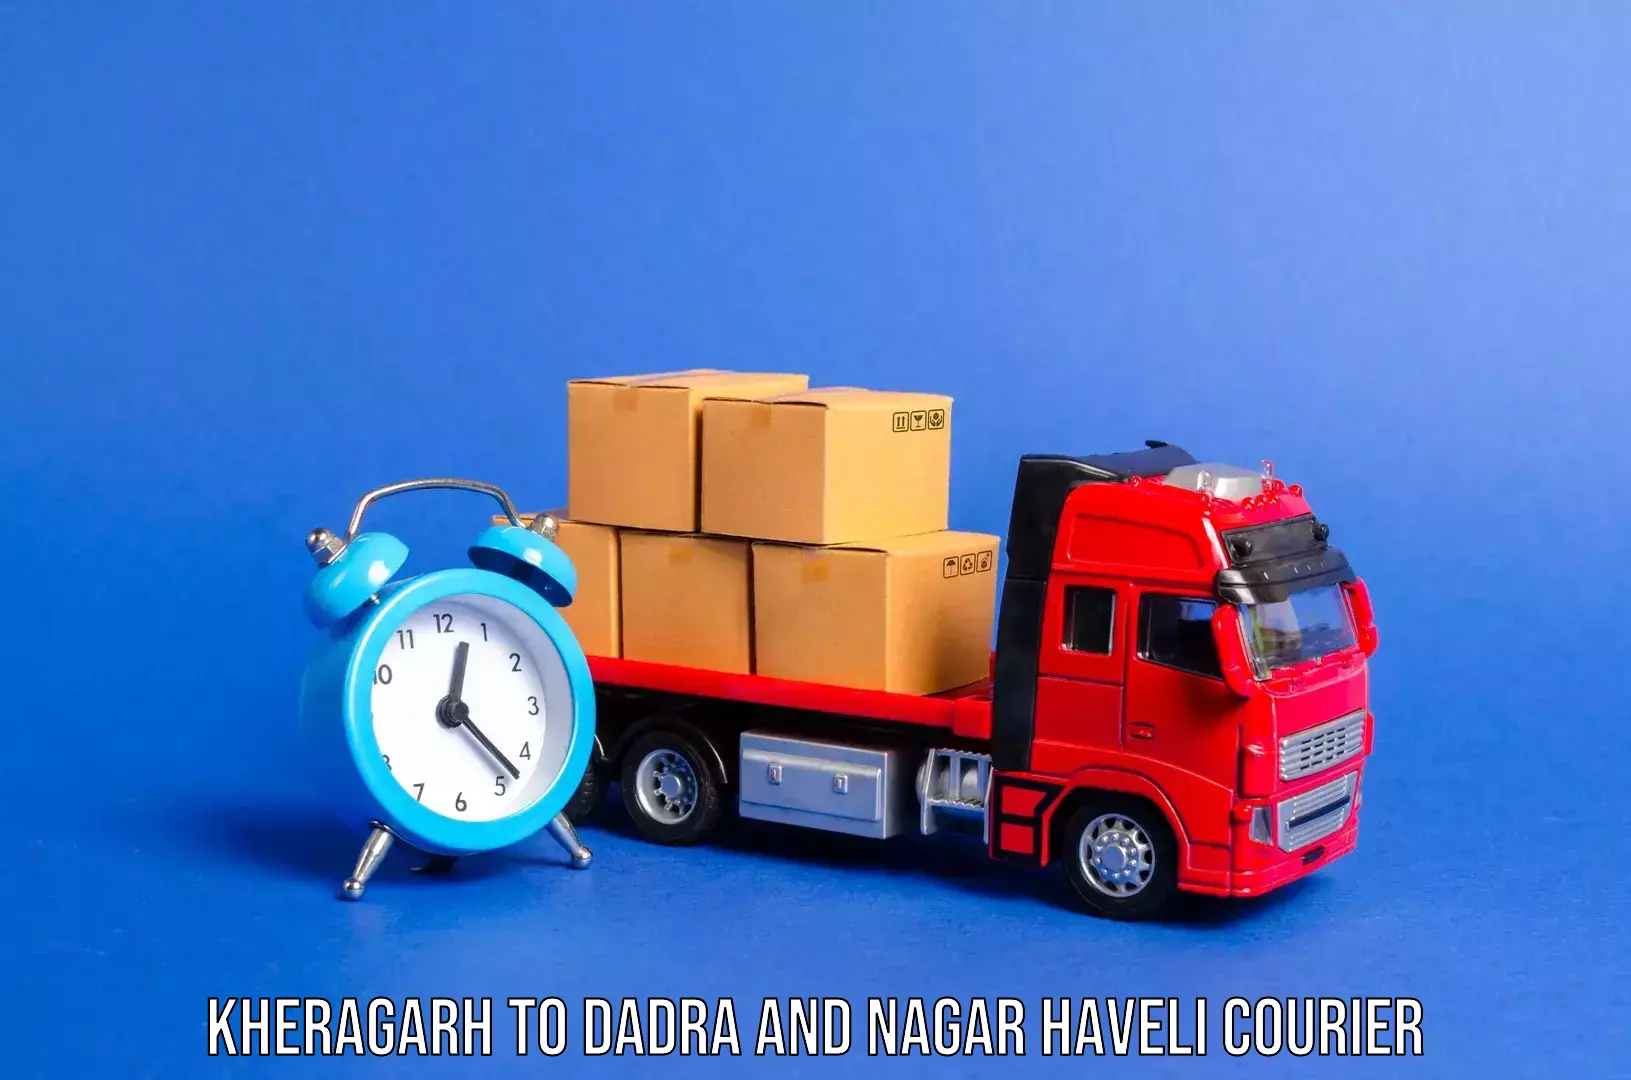 Luggage dispatch service Kheragarh to Silvassa